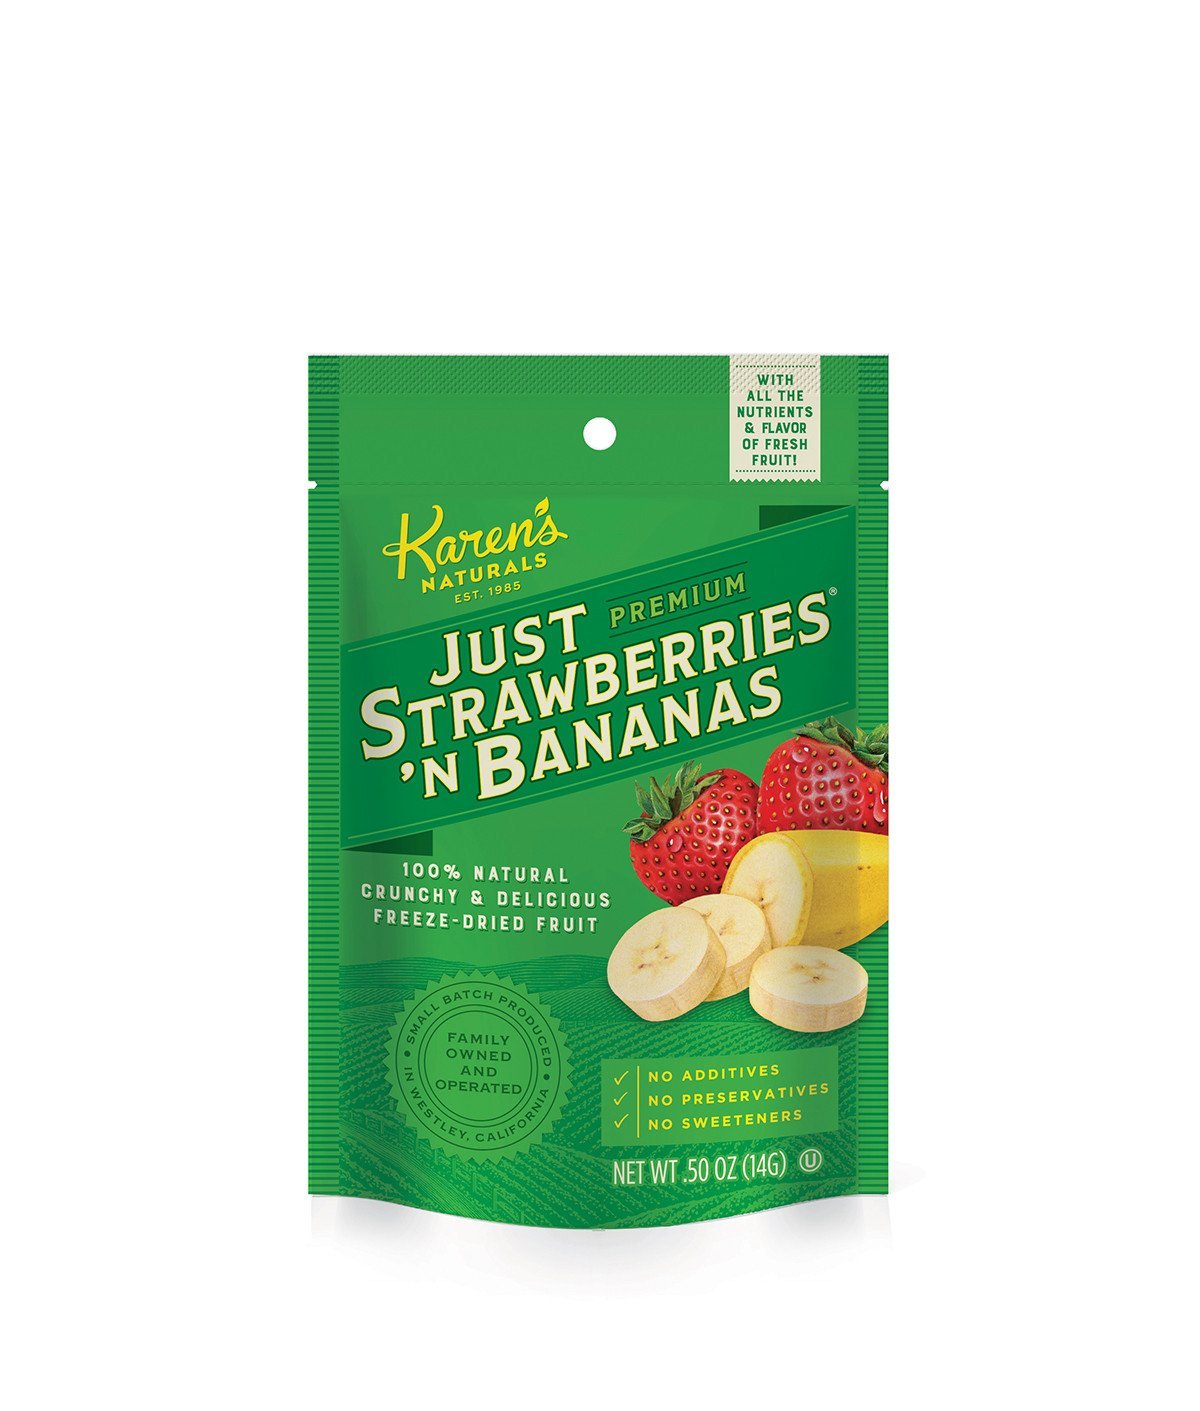 Just Strawberries 'n Bananas - Karen's Naturals